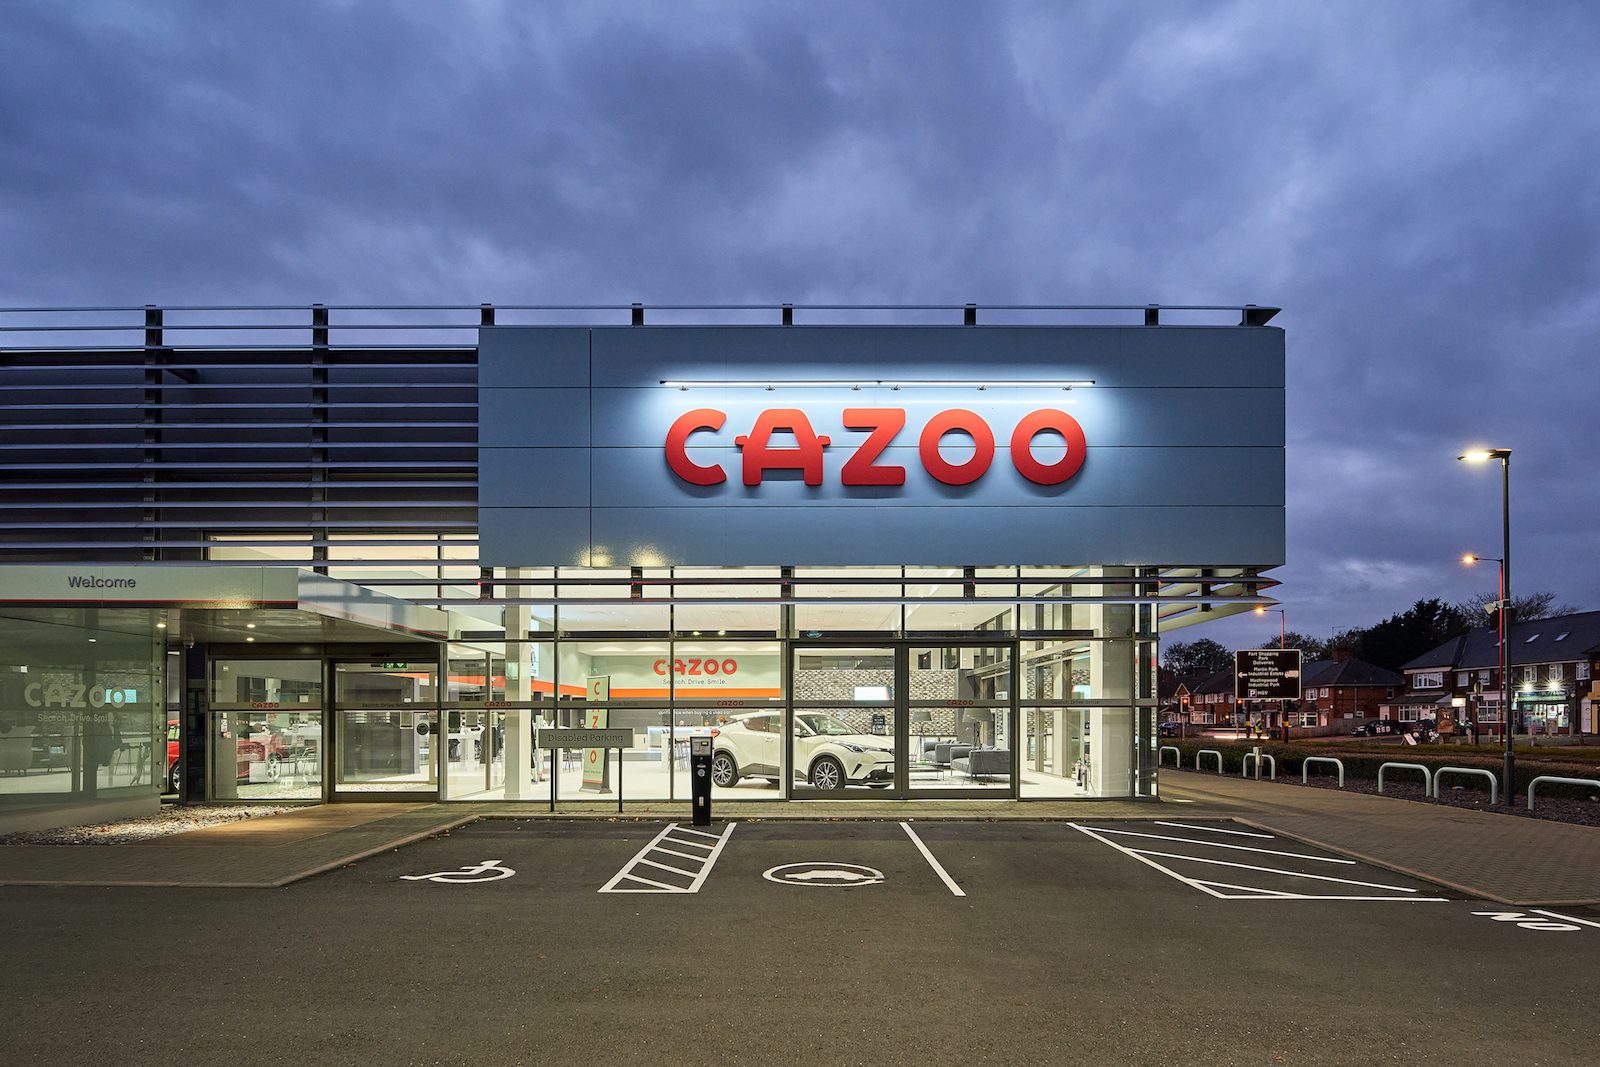 Cazoo posts record UK quarter amid job cuts and Europe exit